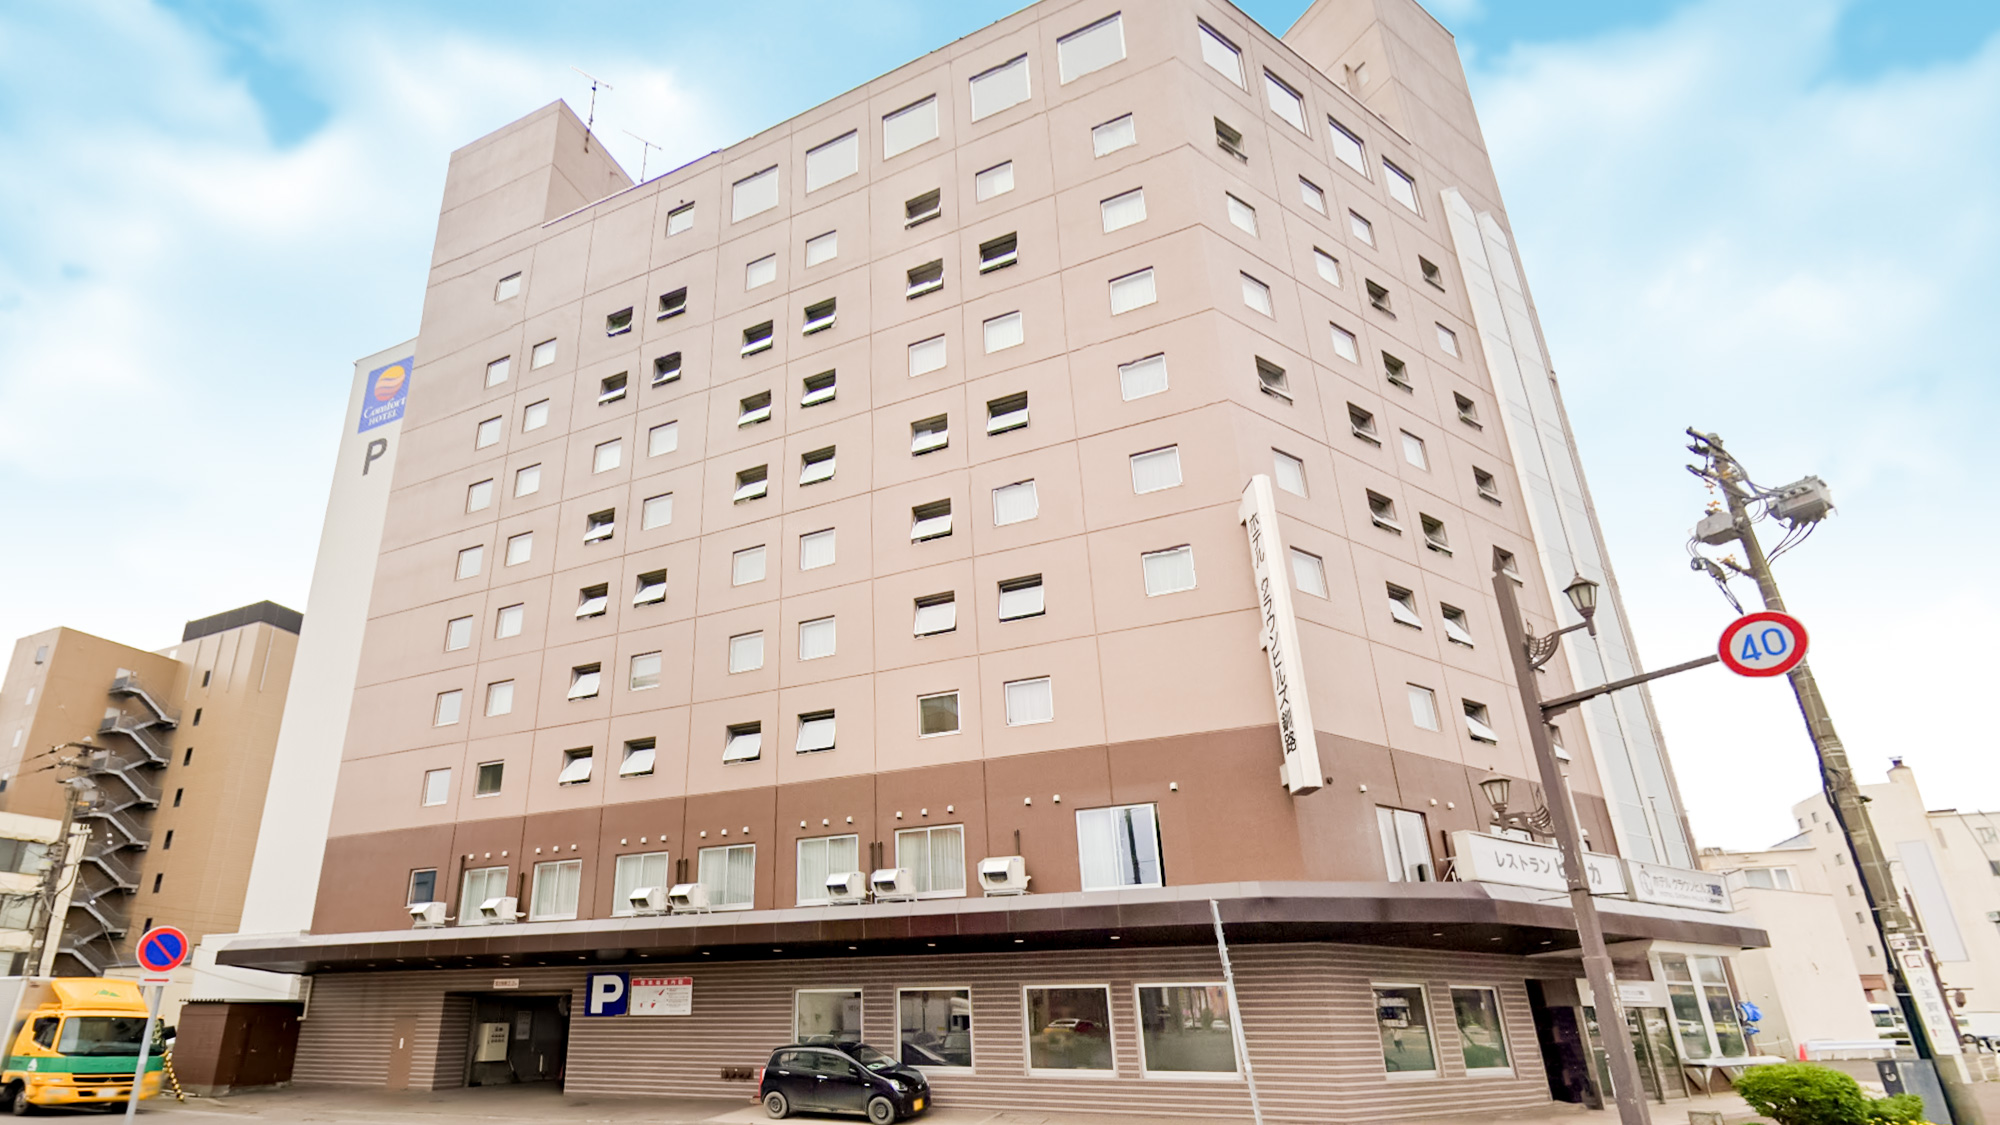 【一人旅】釧路から根室で便利なホテル・旅館